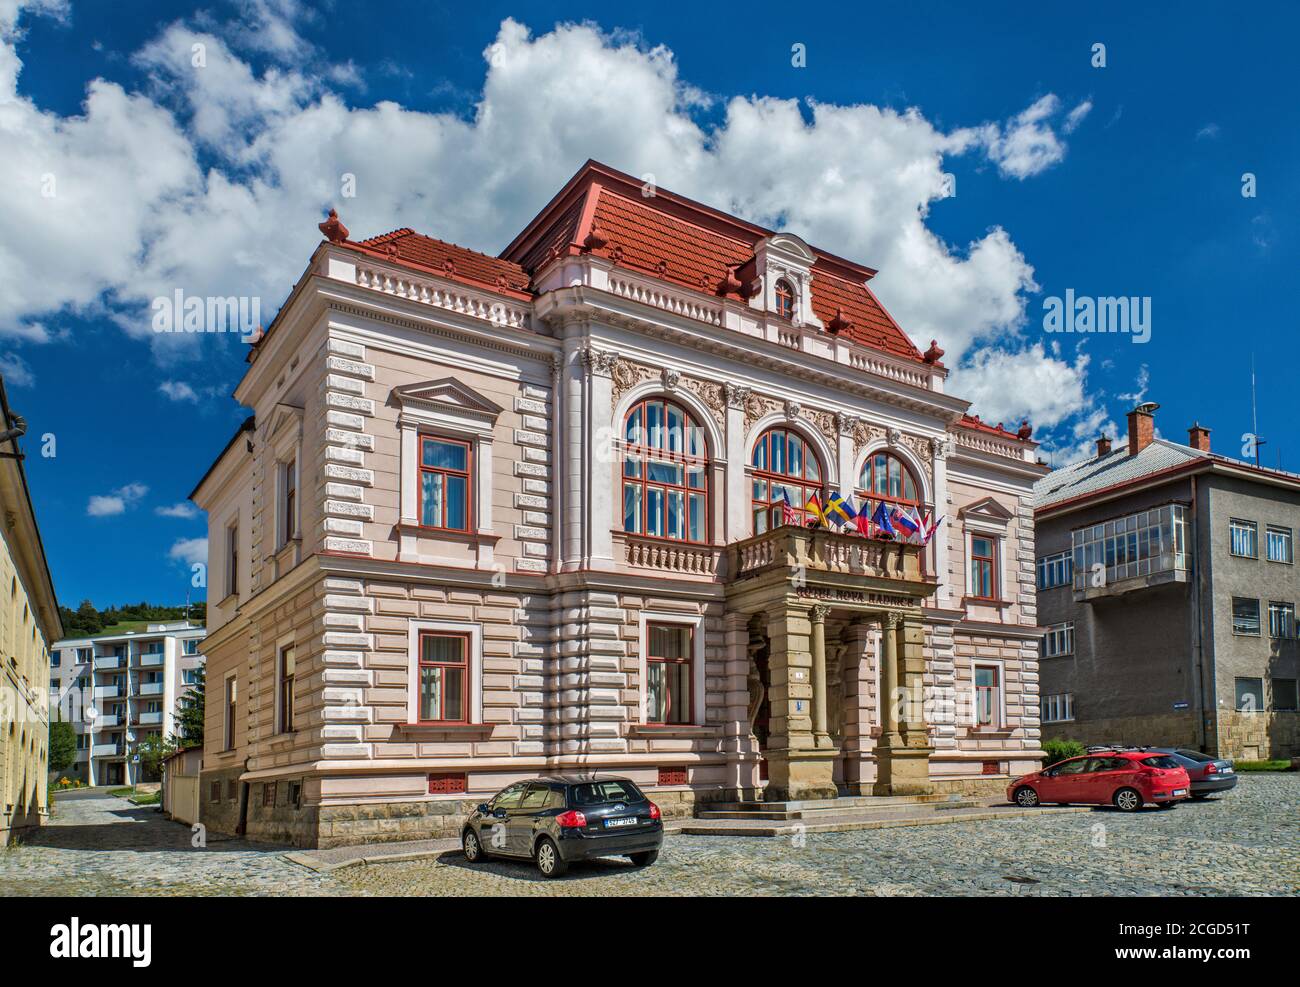 Hotel Nova Radnice, hôtel à l'ancienne mairie, XVIIe siècle, à Horni mesto, partie supérieure de la ville de Vsetin, Moravie, région de Zlin, République Tchèque Banque D'Images